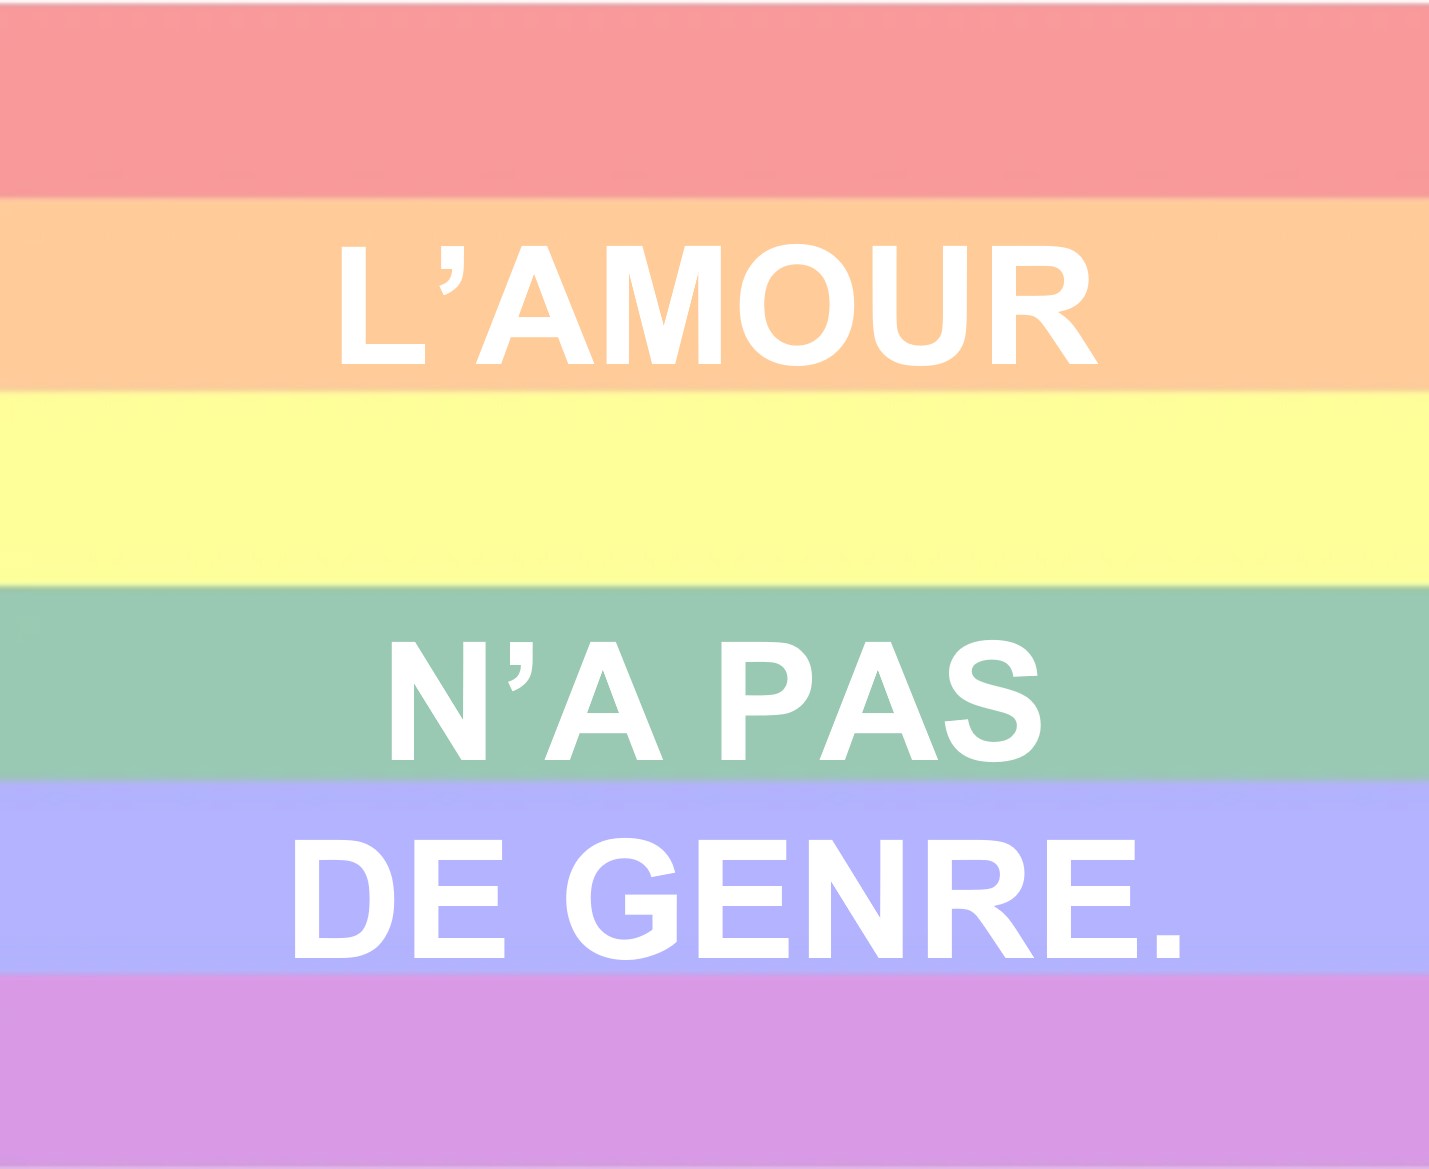 VERNISSAGE DE L'EXPOSITION "DES SLOGANS POUR EFFACER LES HAINES" à 18h30 Centre LGBTQIA+ Nice